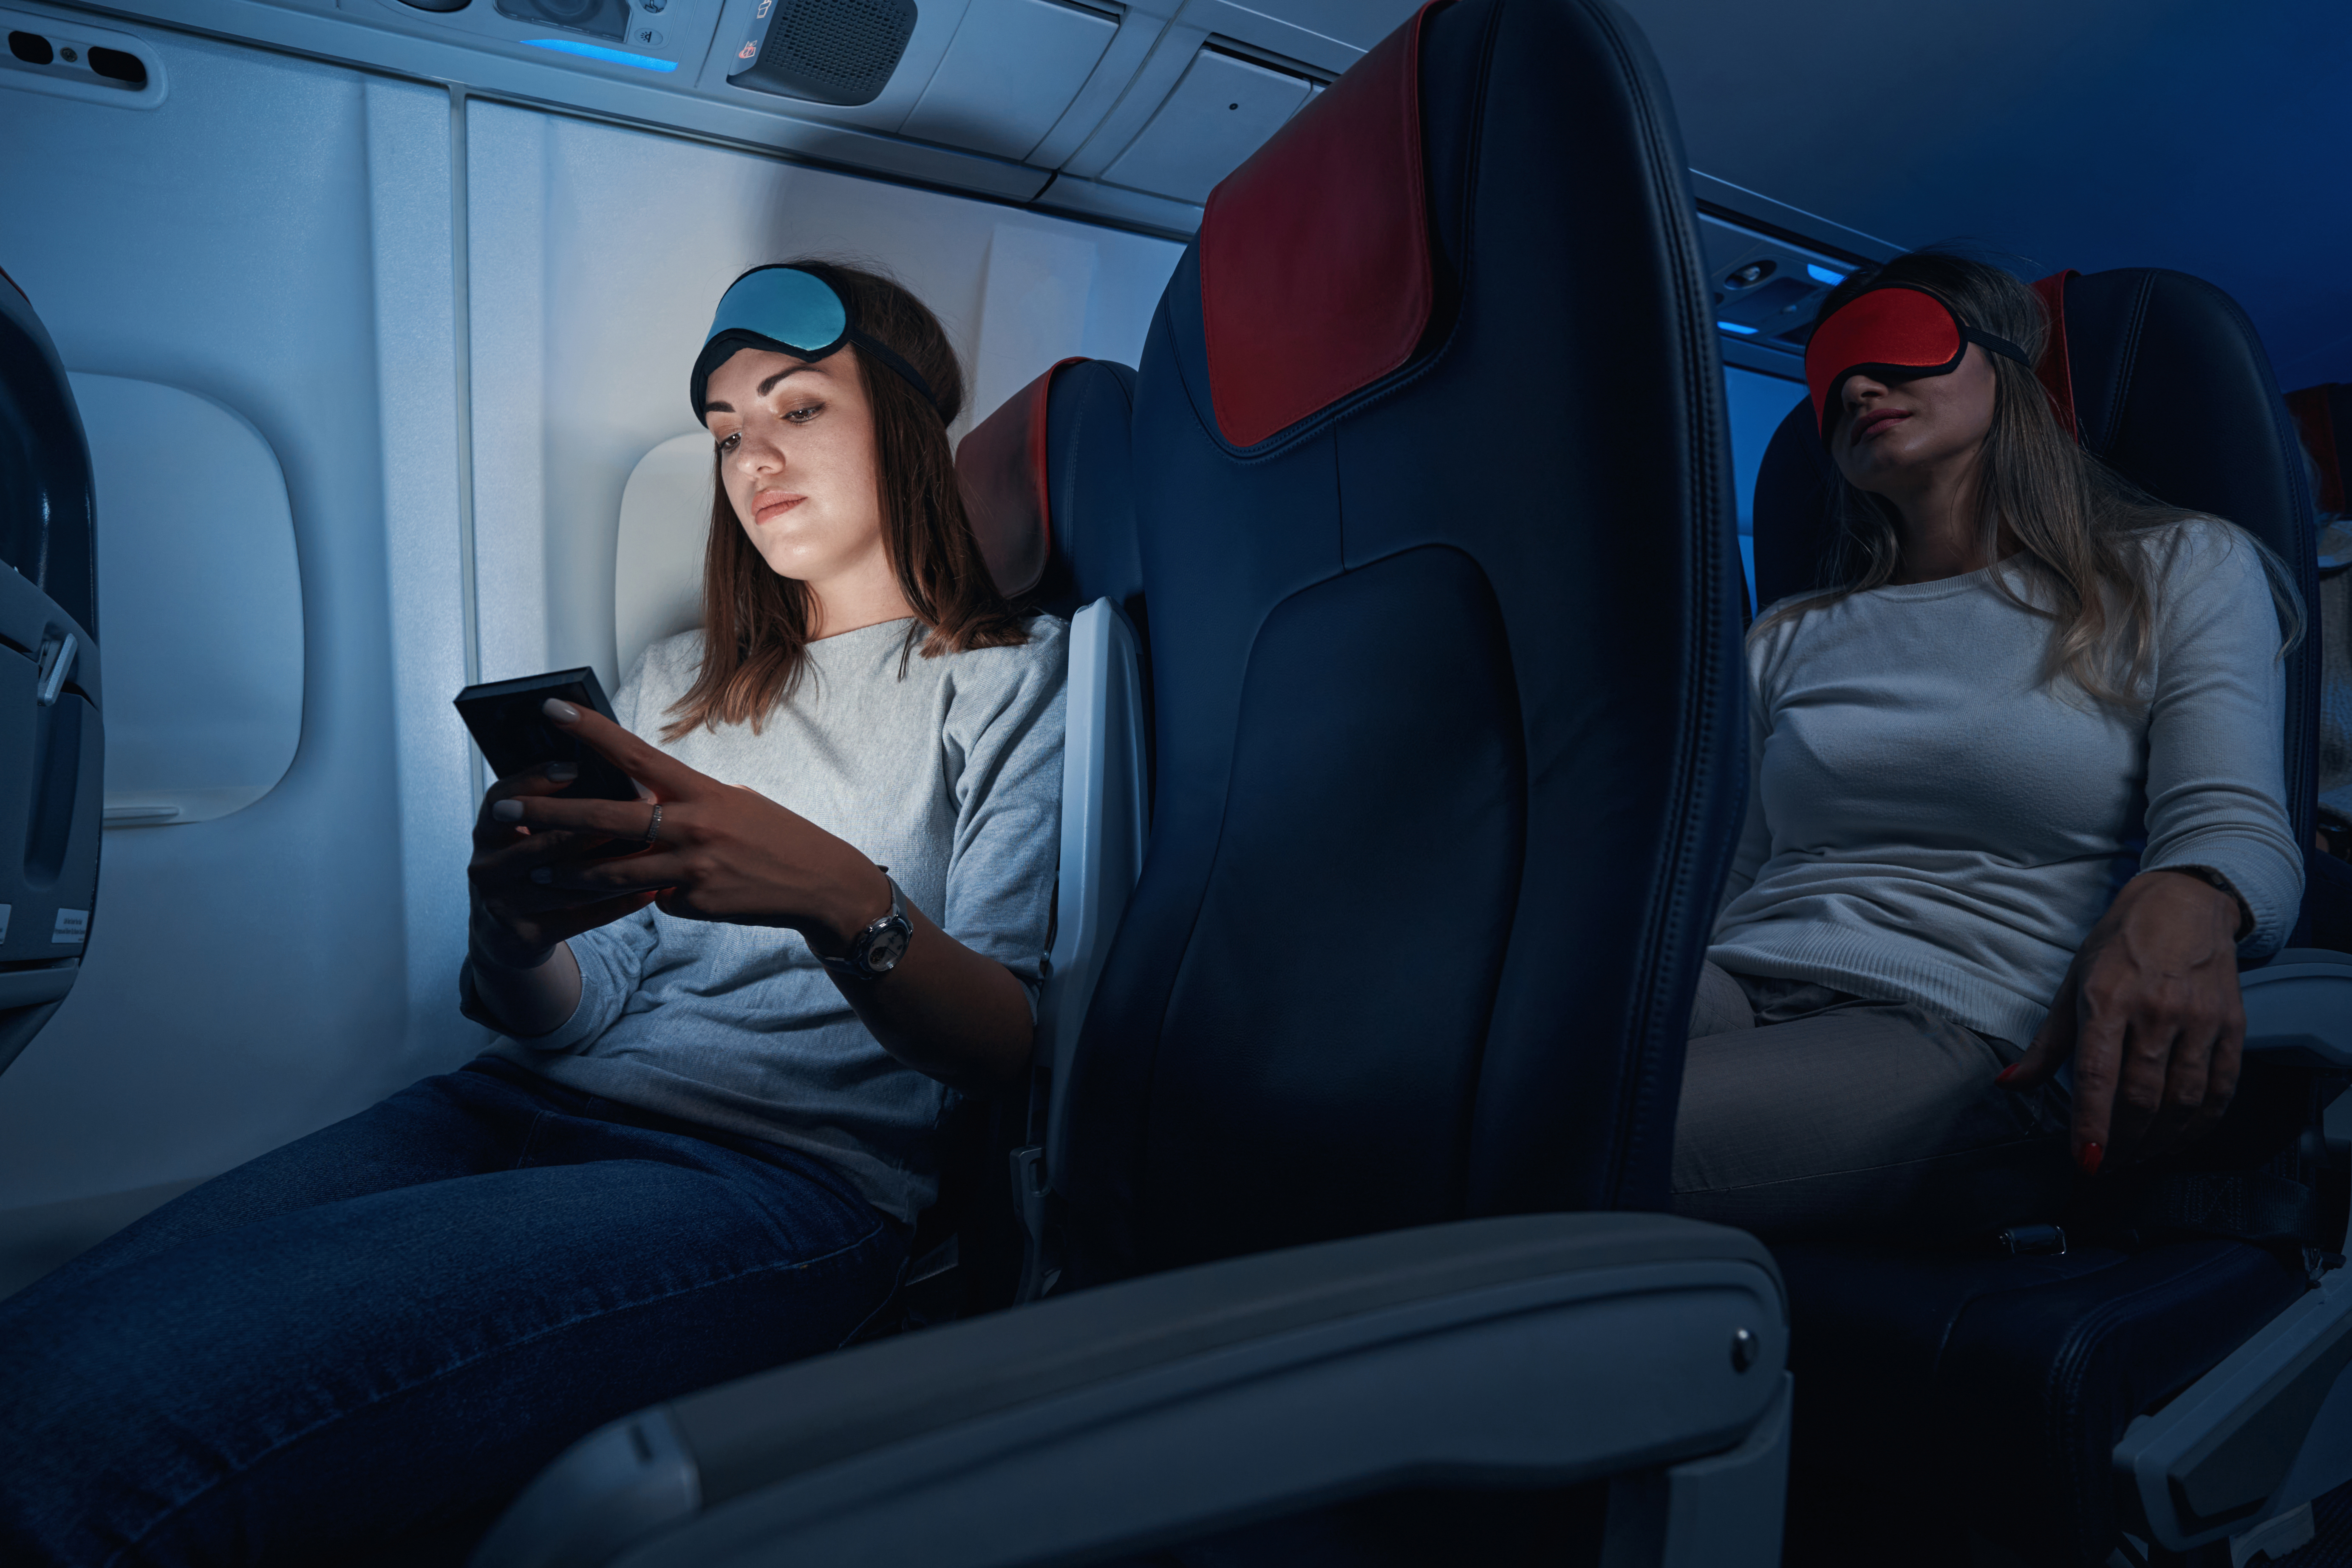 Passagiere sollten ihre Telefonbildschirme dimmen, nachdem die Kabinenbeleuchtung ausgeschaltet wurde